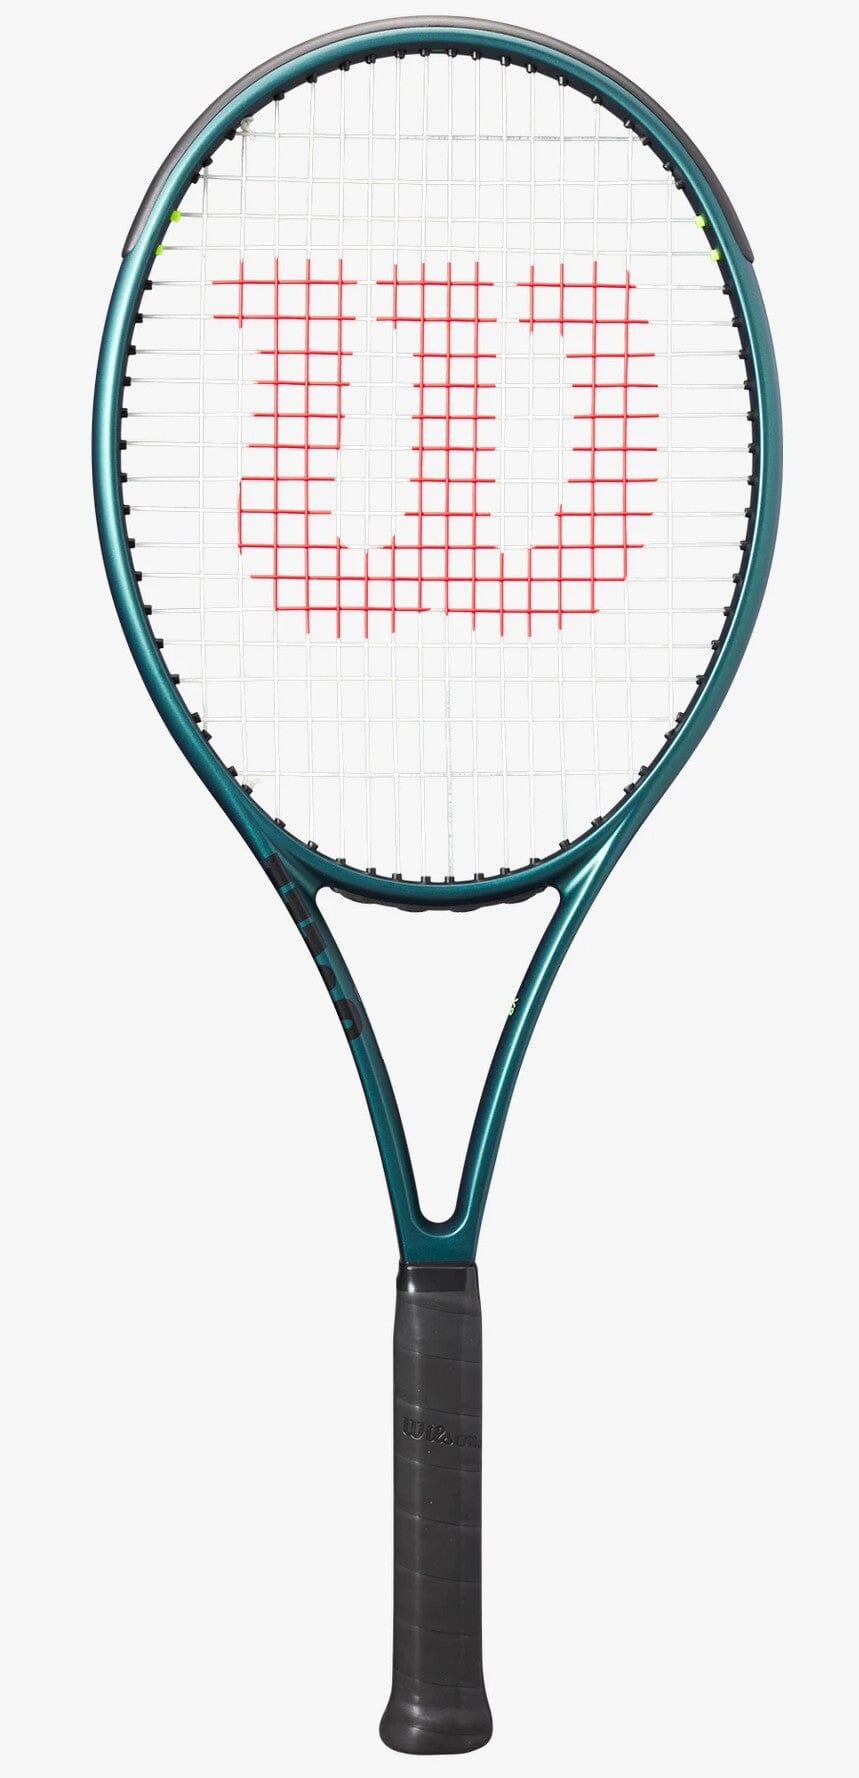 Tennis Equipment & Gear